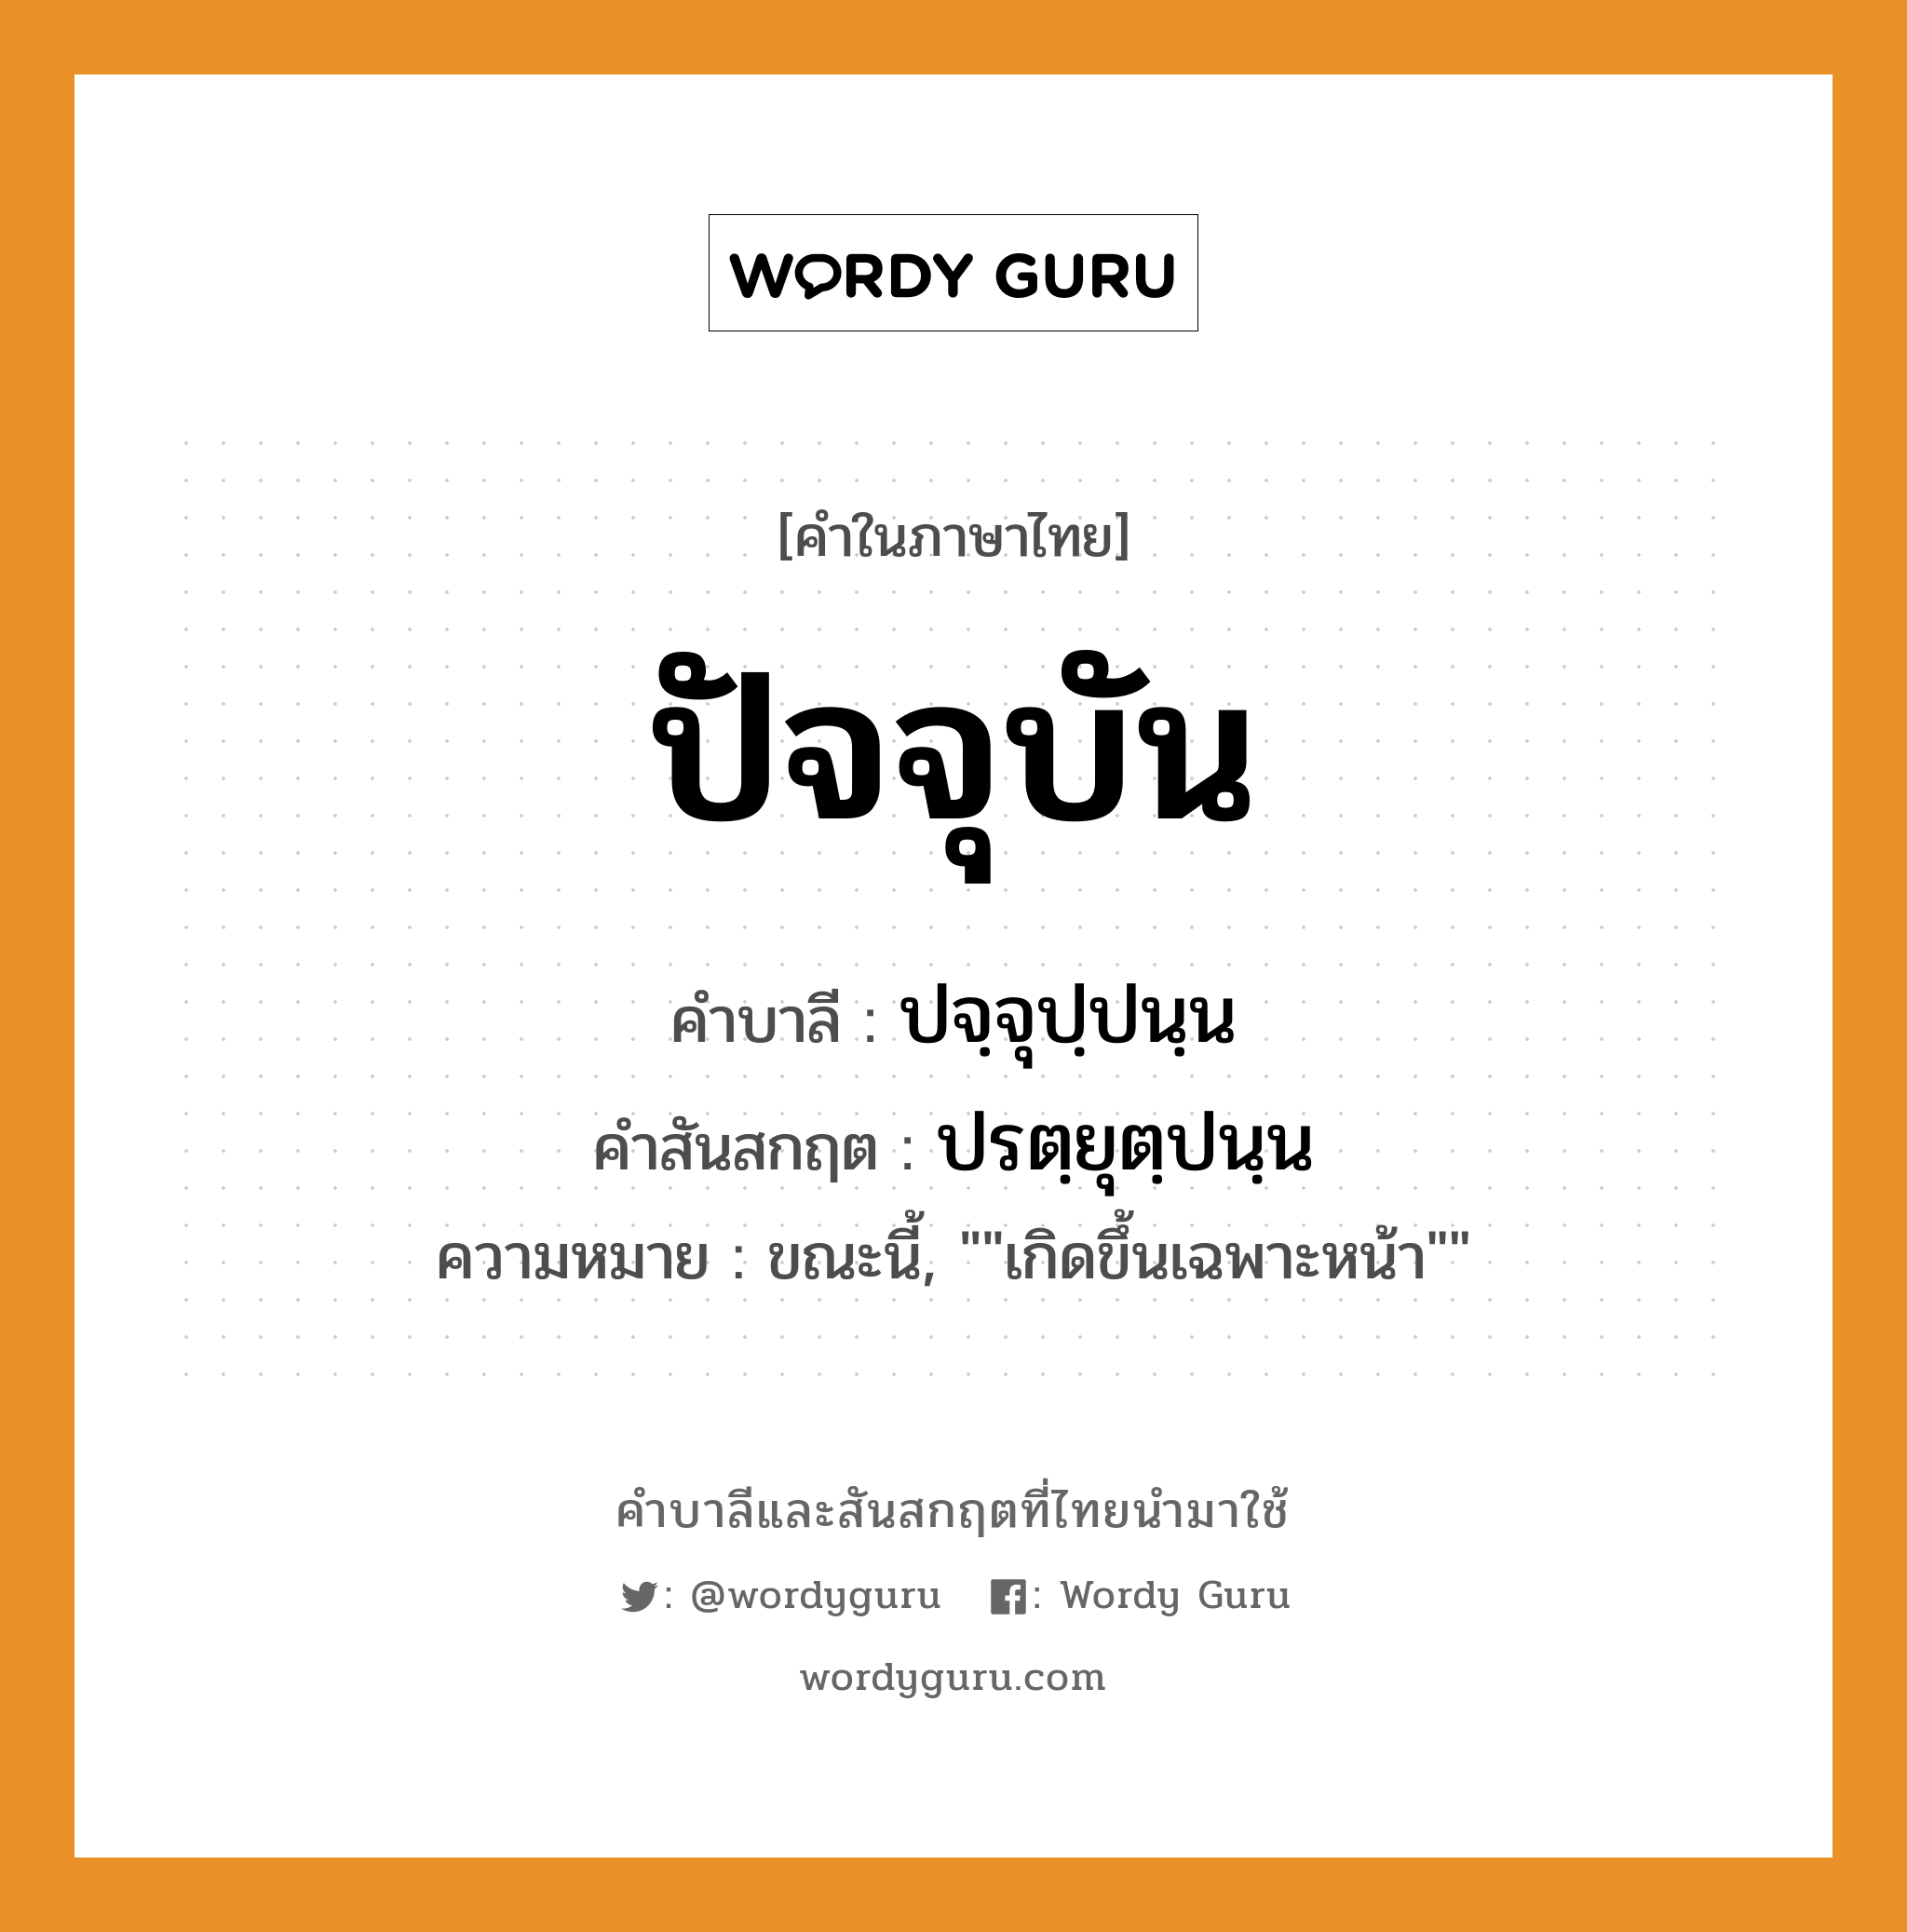 ปัจจุบัน บาลี สันสกฤต?, คำบาลีและสันสกฤต ปัจจุบัน คำในภาษาไทย ปัจจุบัน คำบาลี ปจฺจุปฺปนฺน คำสันสกฤต ปรตฺยุตฺปนฺน ความหมาย ขณะนี้, ""เกิดขึ้นเฉพาะหน้า""